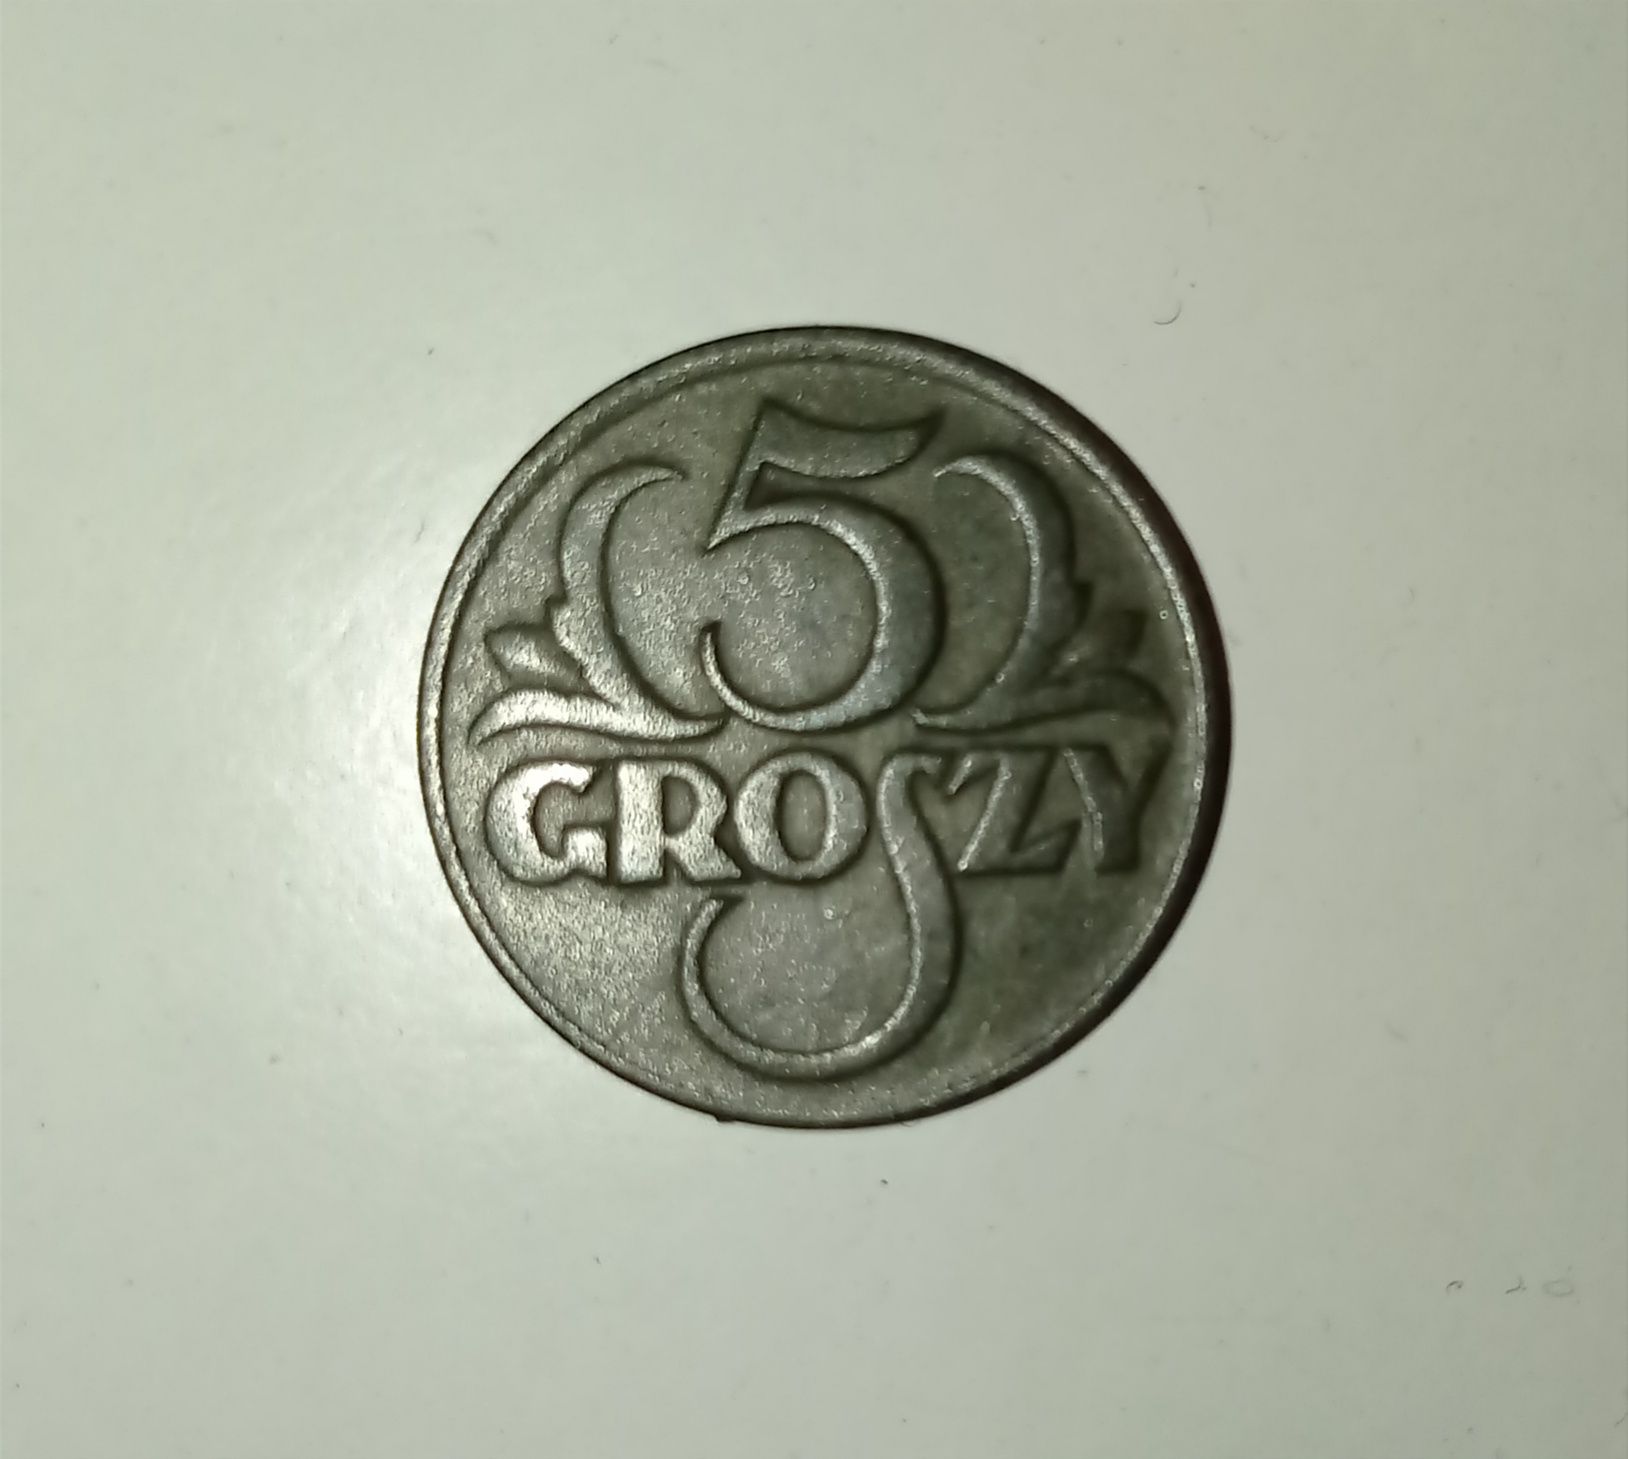 Moneta 5 groszy z 1928 roku